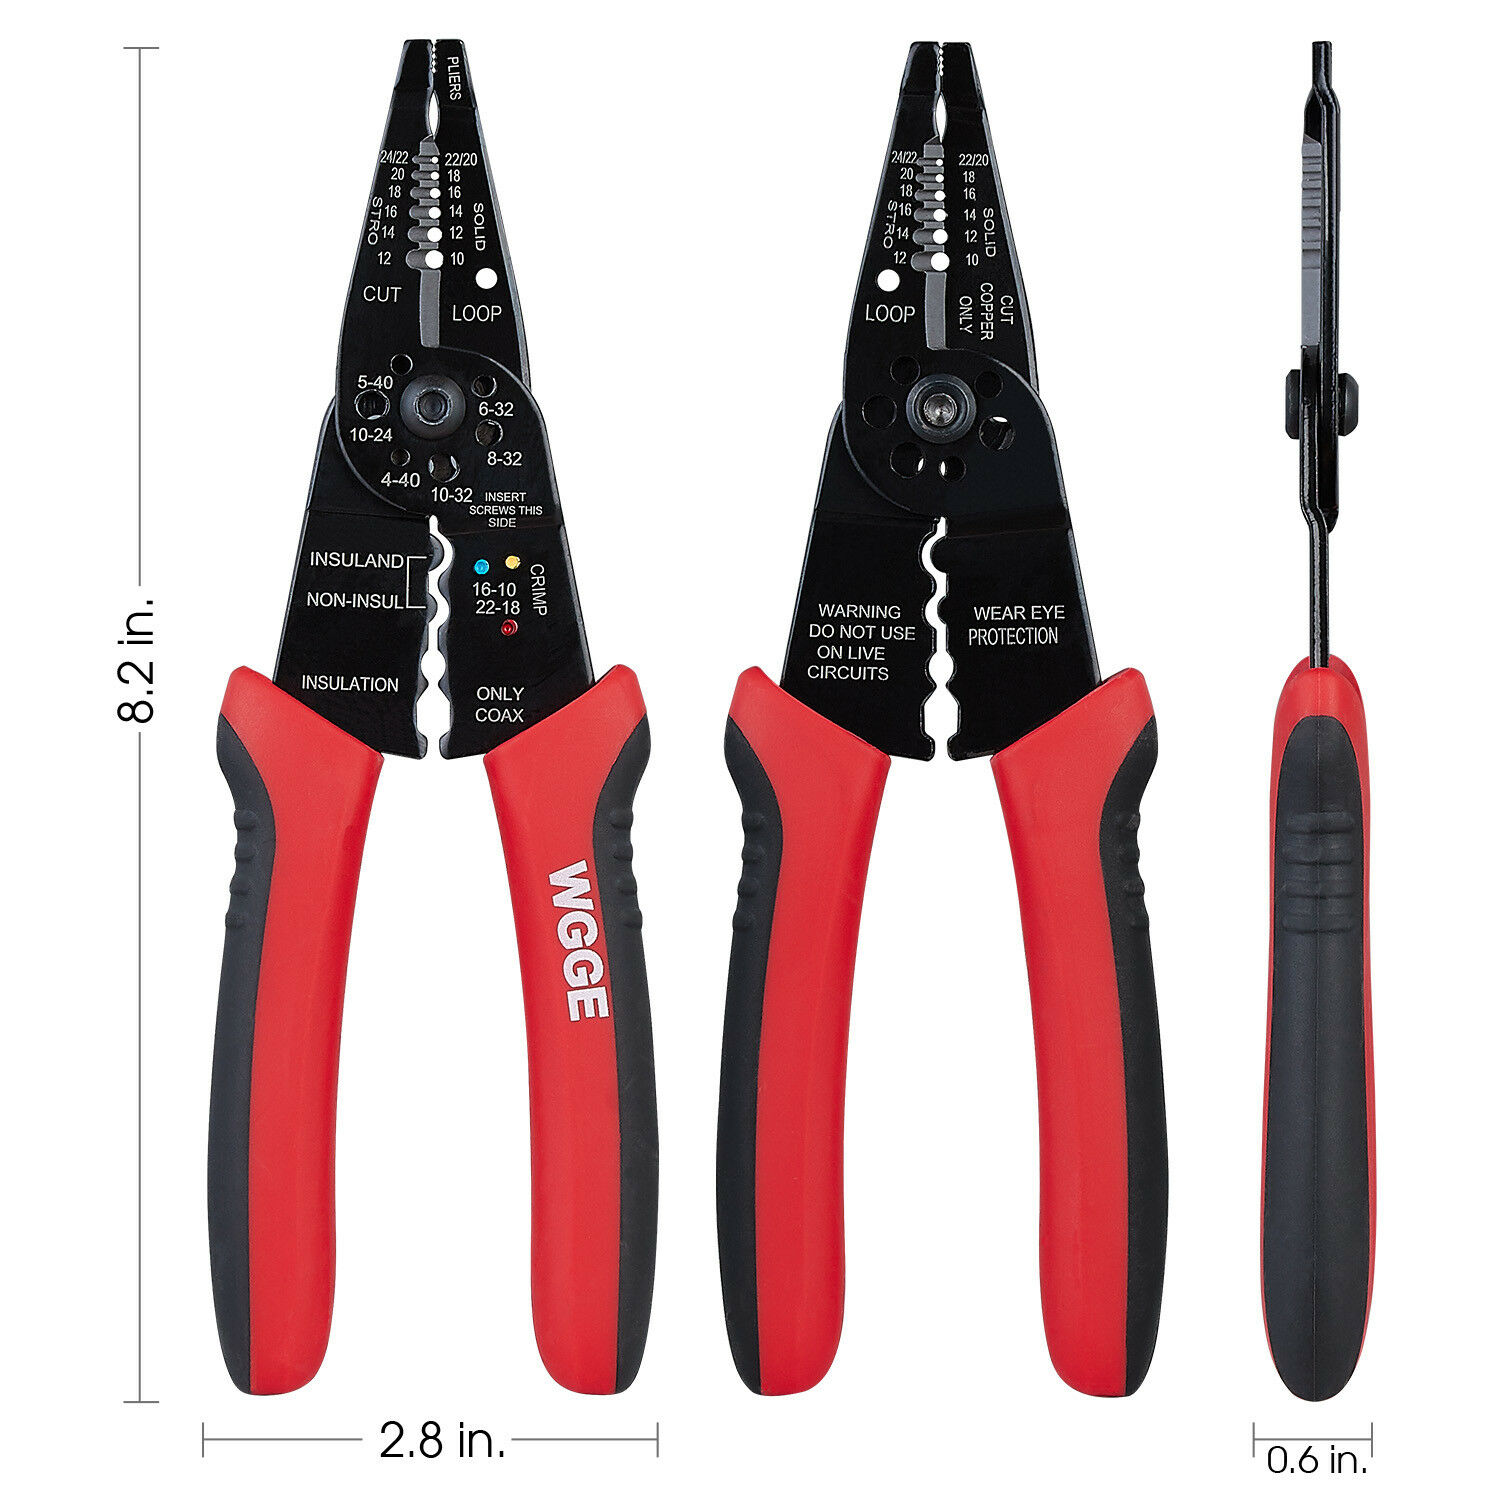 Wg-015 Professional Crimping Tool / Wgge Multi-tool Wire Stripper-cutter-crimper